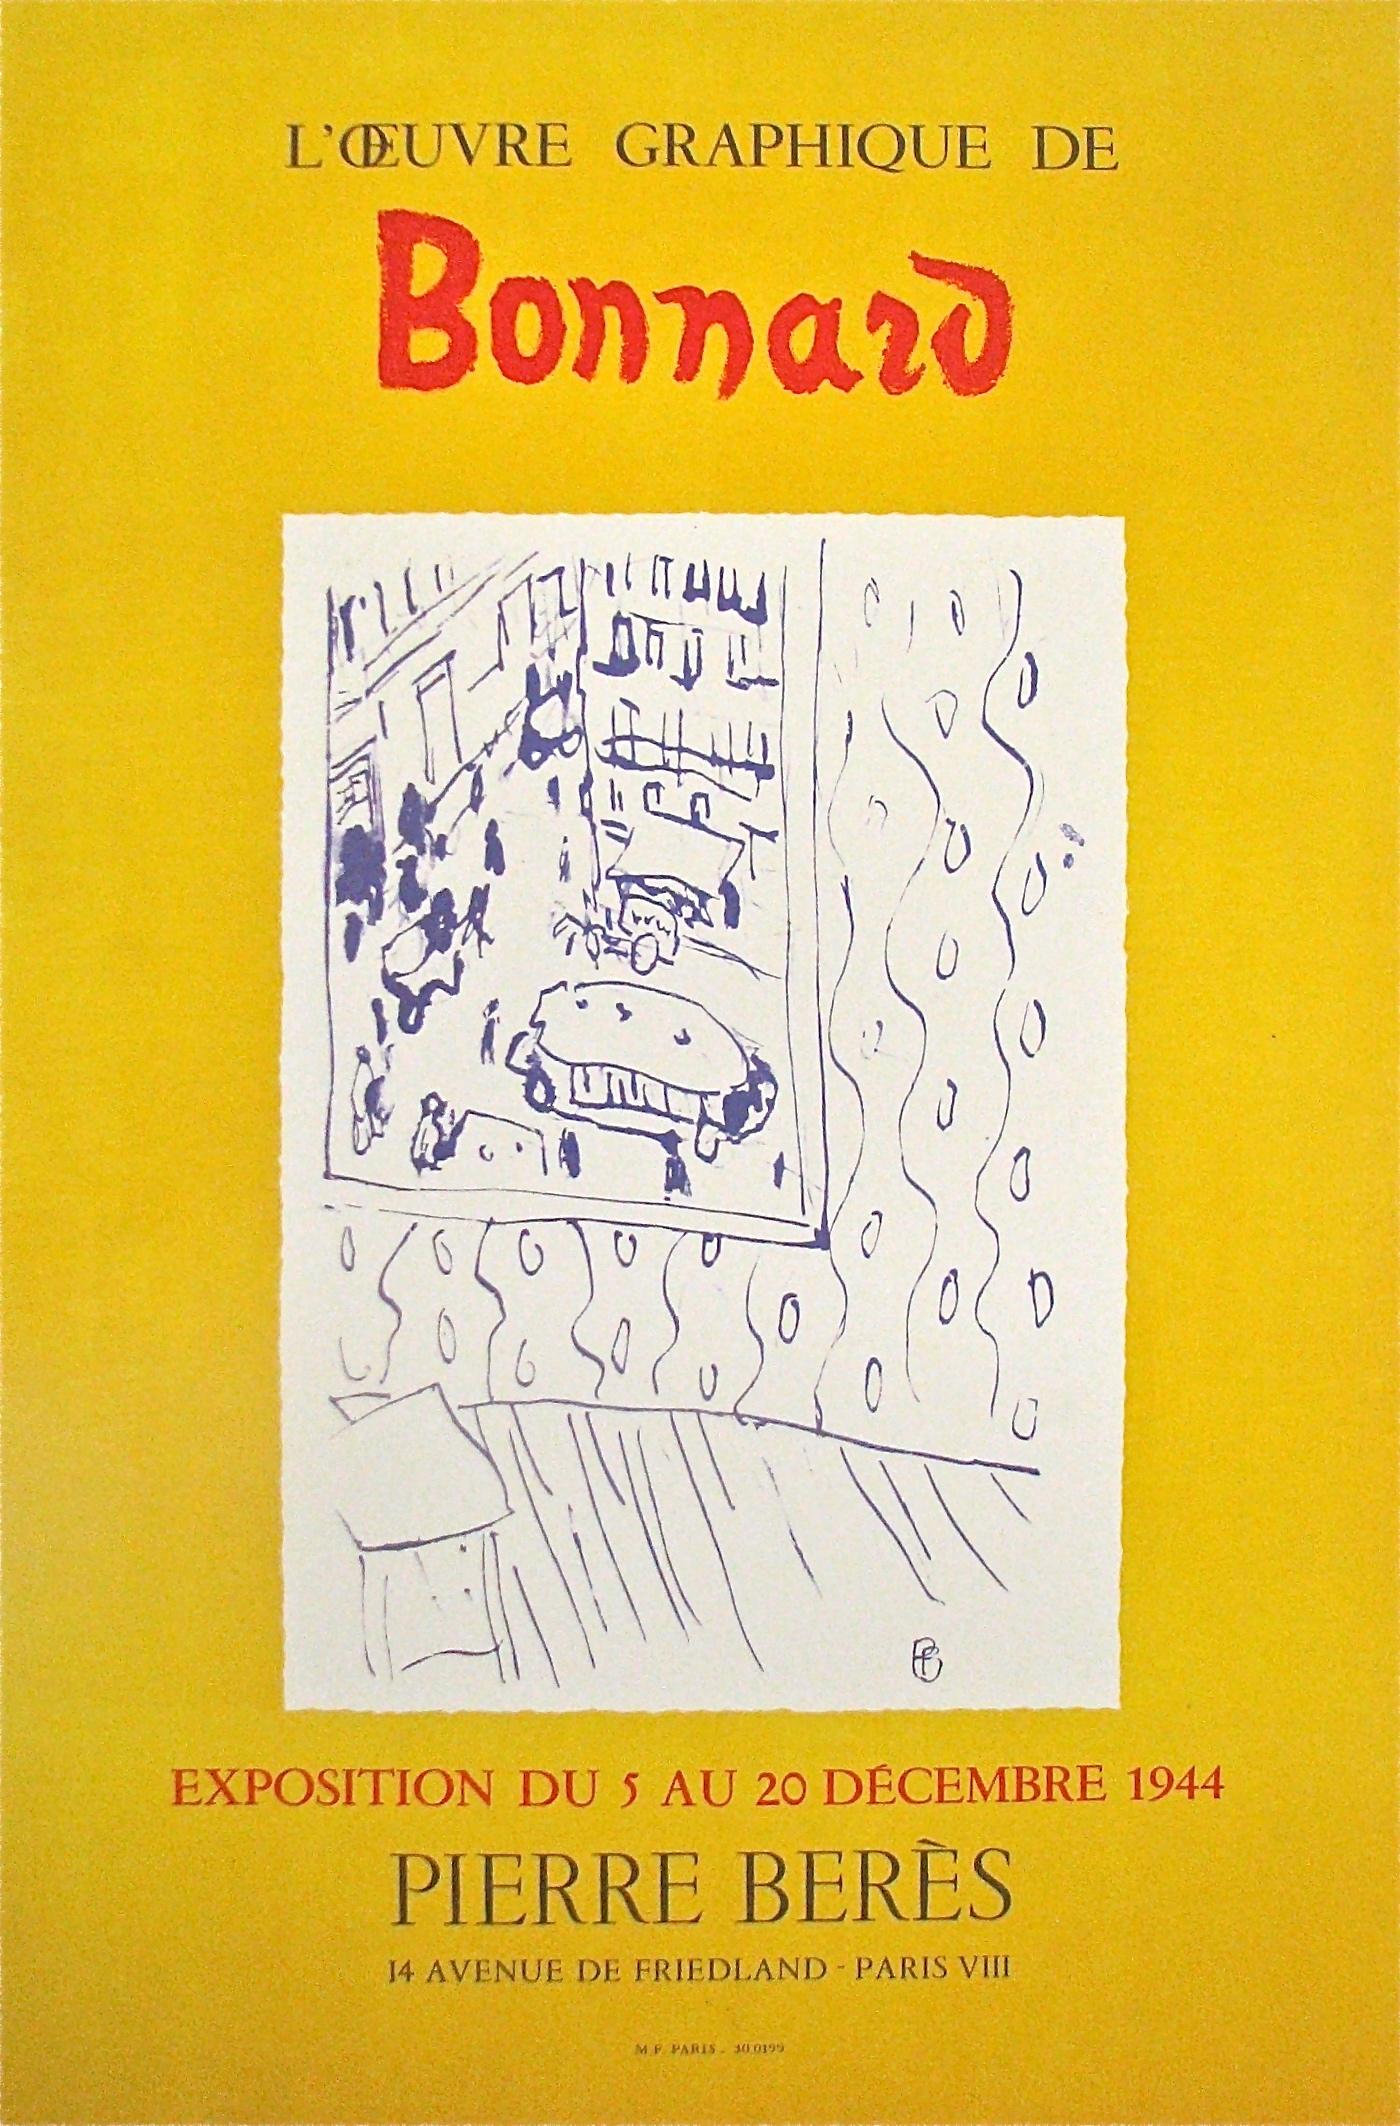 (after) Pierre Bonnard Print – ""L'Oeuvre Graphique de Bonnard"" - Galerie Pierre Bers, (nach Pierre Bonnard